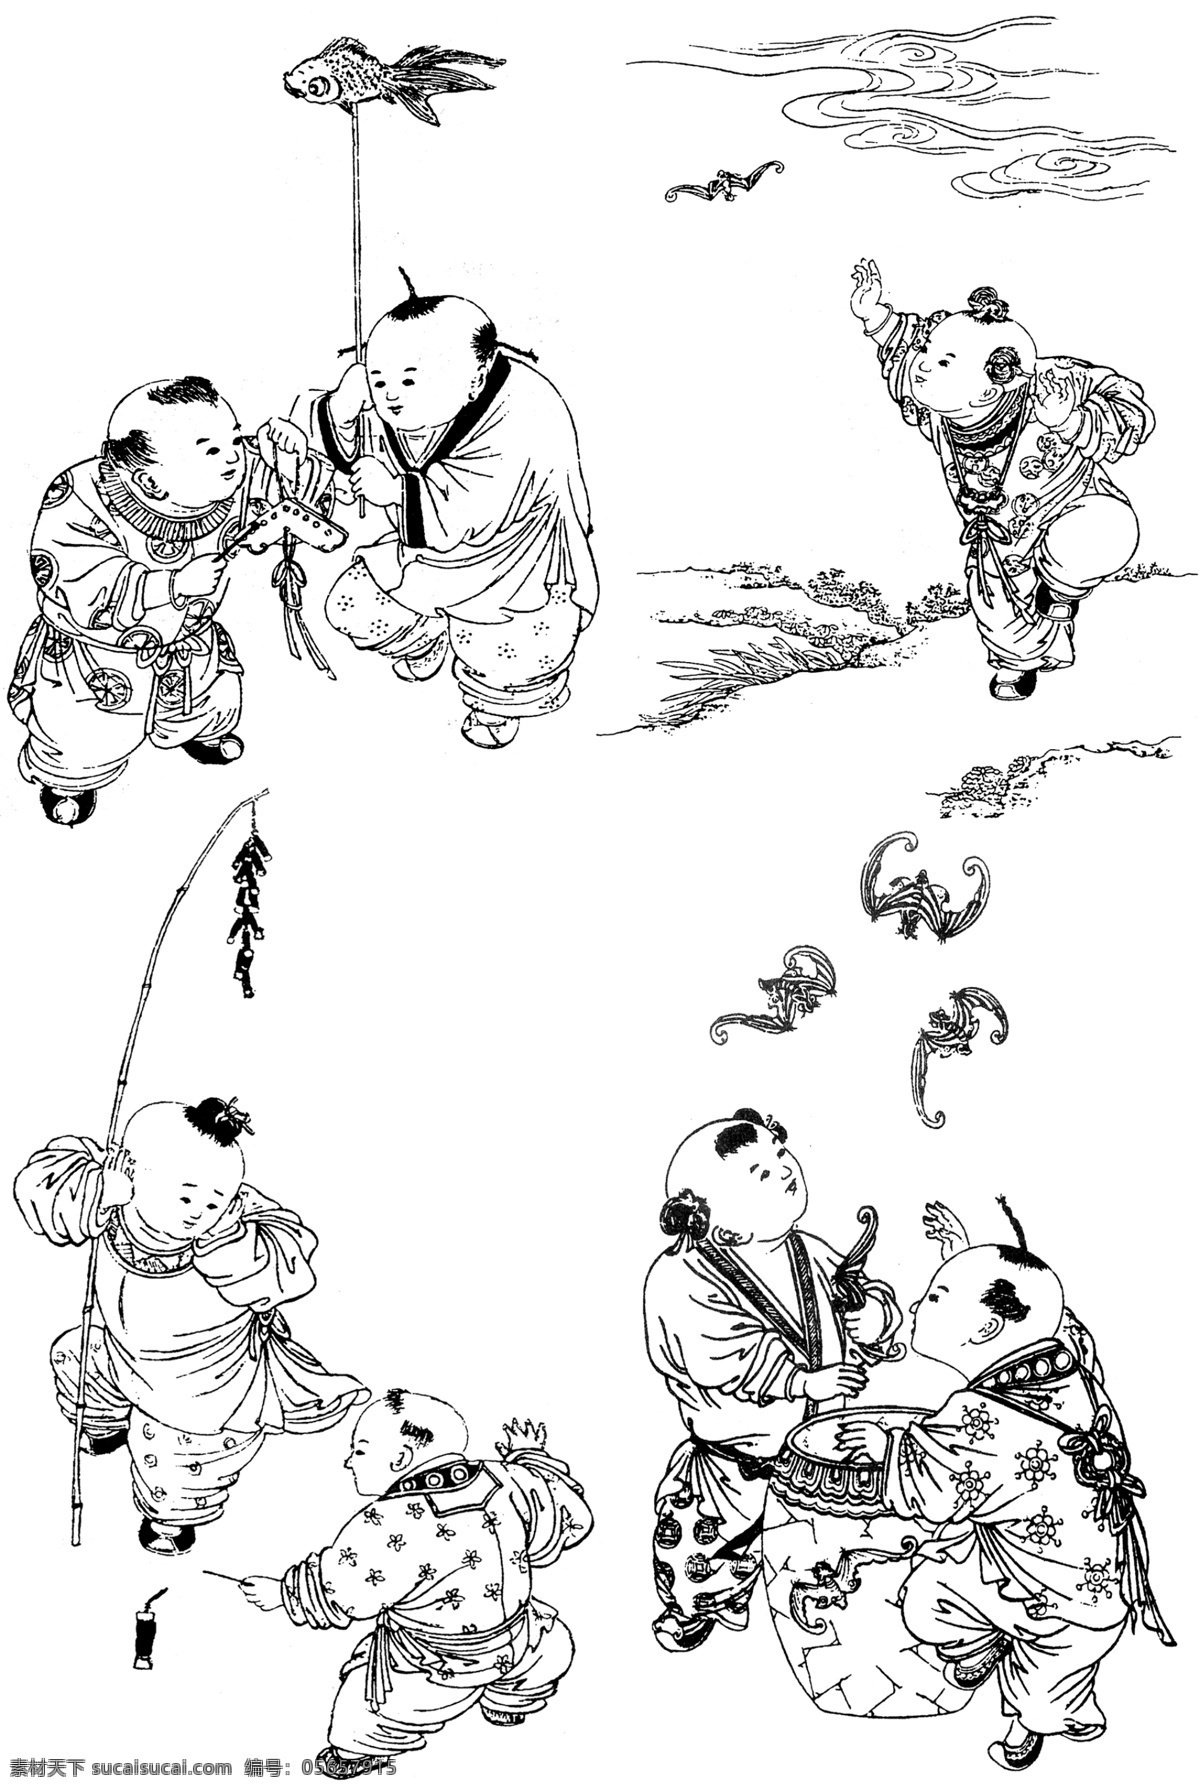 中国吉祥图案 吉祥象征图案 图案素材 线描 古典图案 图案纹样 传统纹样 传统图案 中国传统 中式纹饰 艺术图案 传统文化 人物白描 孩童 小孩 人物线稿 吉祥图案 婴戏图 小孩子 分层 源文件